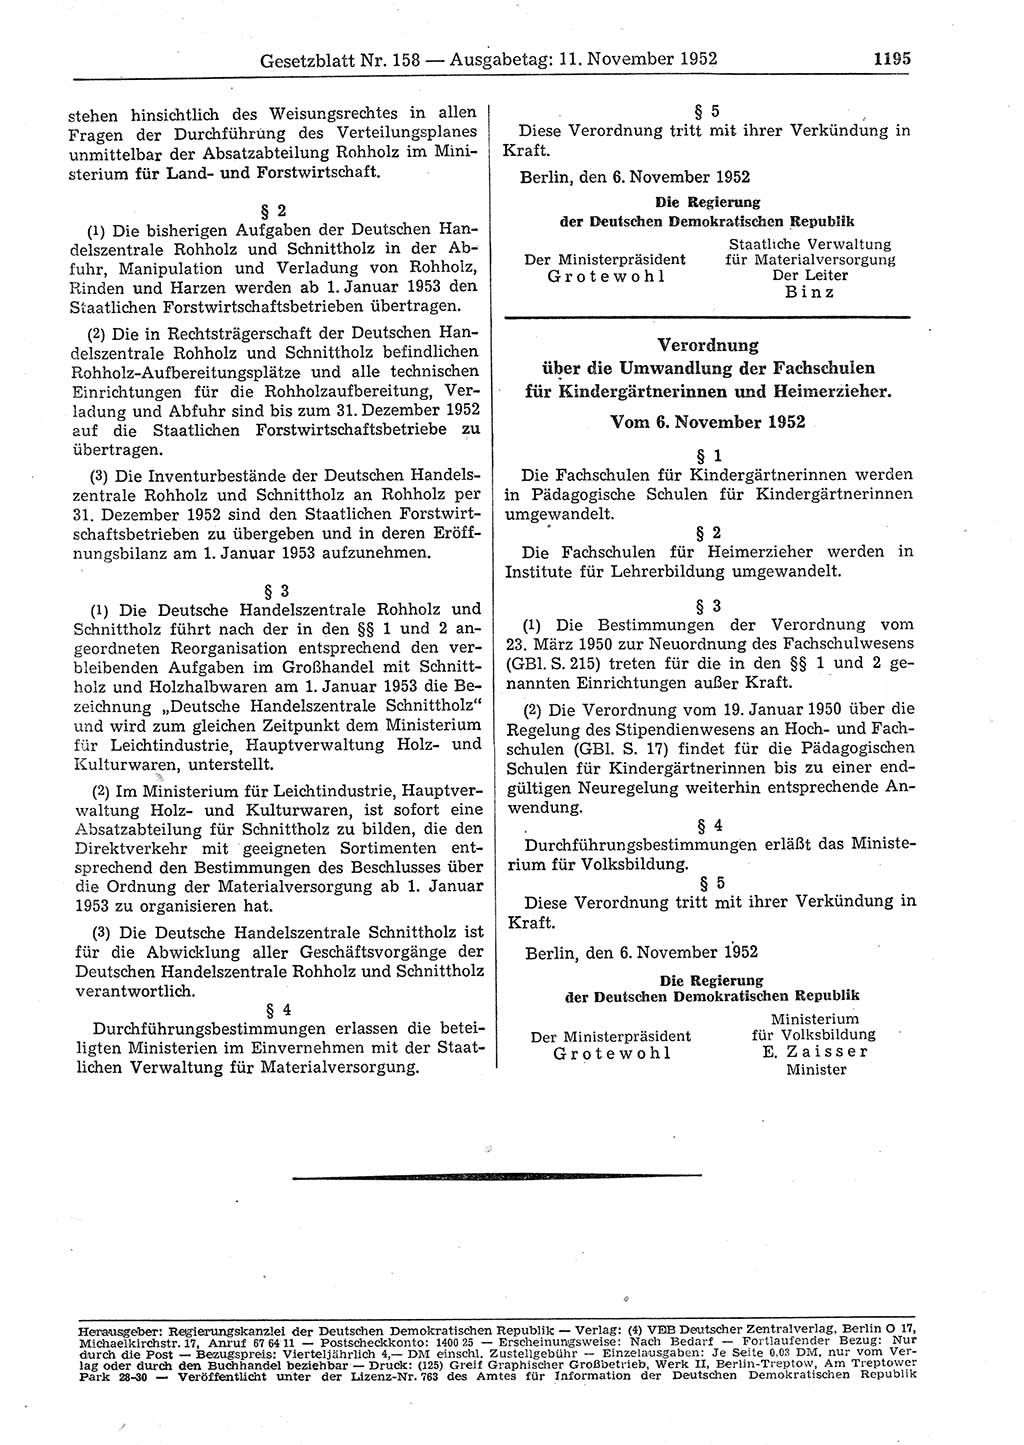 Gesetzblatt (GBl.) der Deutschen Demokratischen Republik (DDR) 1952, Seite 1195 (GBl. DDR 1952, S. 1195)